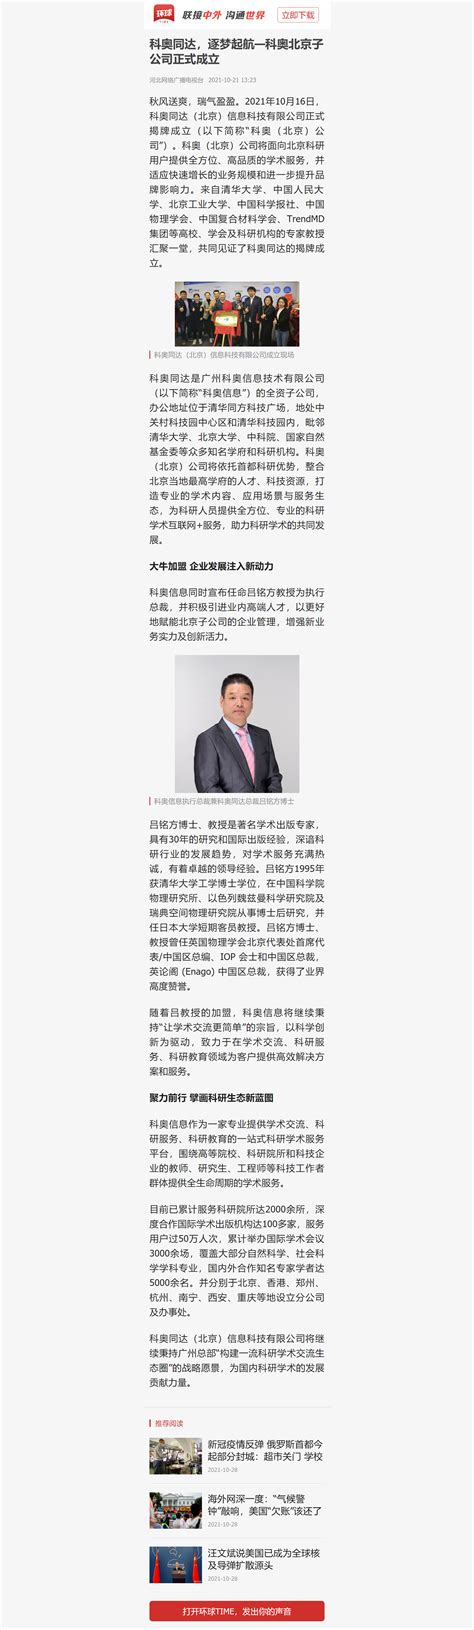 环球时报对科奥北京子公司正式成立进行报道